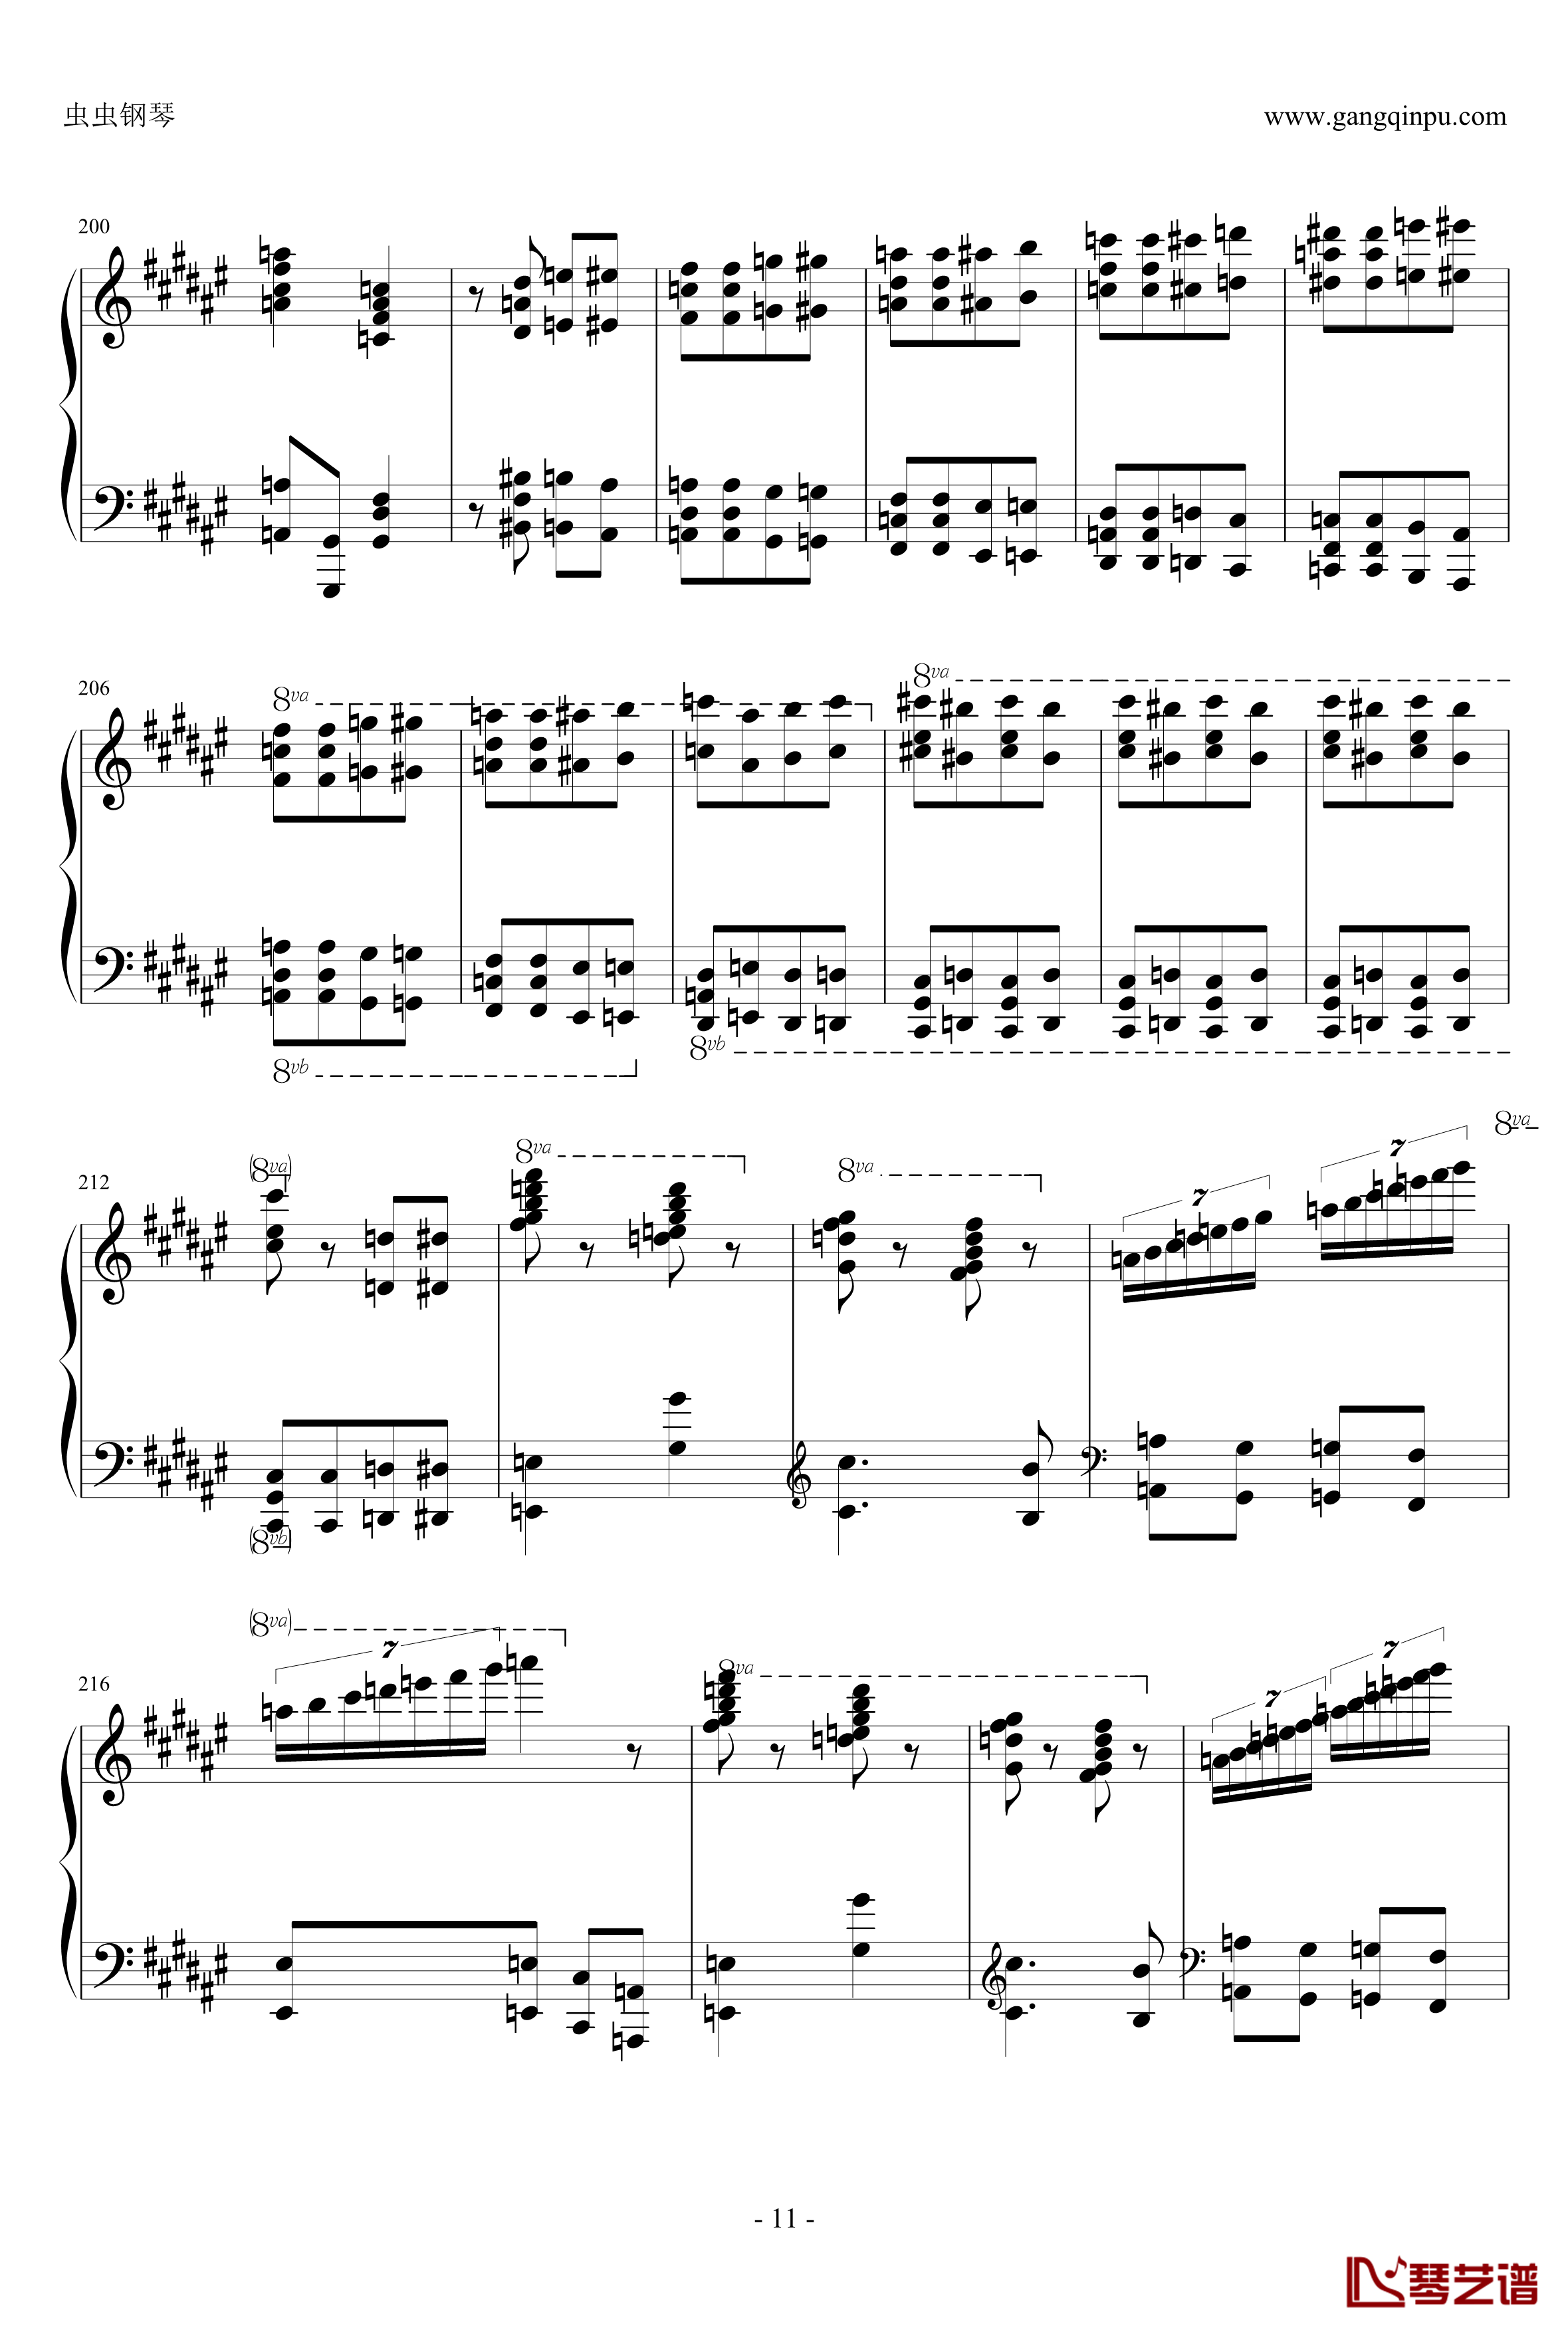 匈牙利狂想曲第二号钢琴谱-霍洛维茨版11